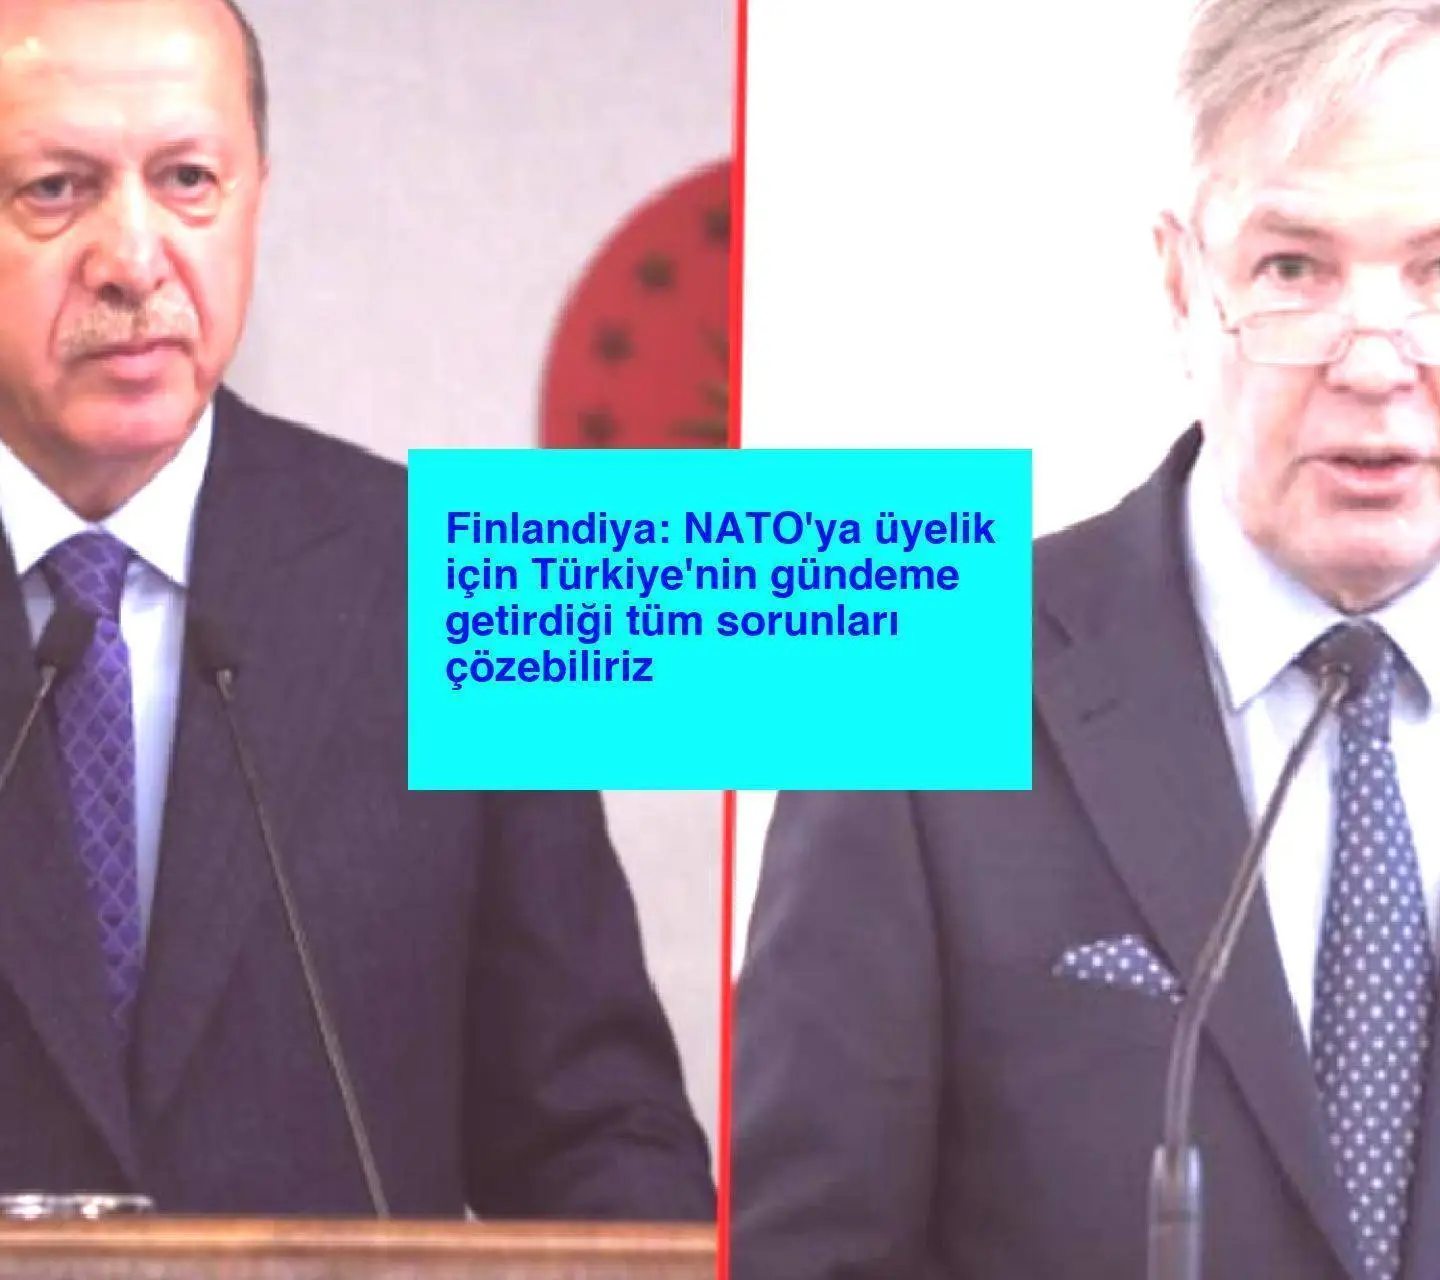 Finlandiya: NATO’ya üyelik için Türkiye’nin gündeme getirdiği tüm sorunları çözebiliriz